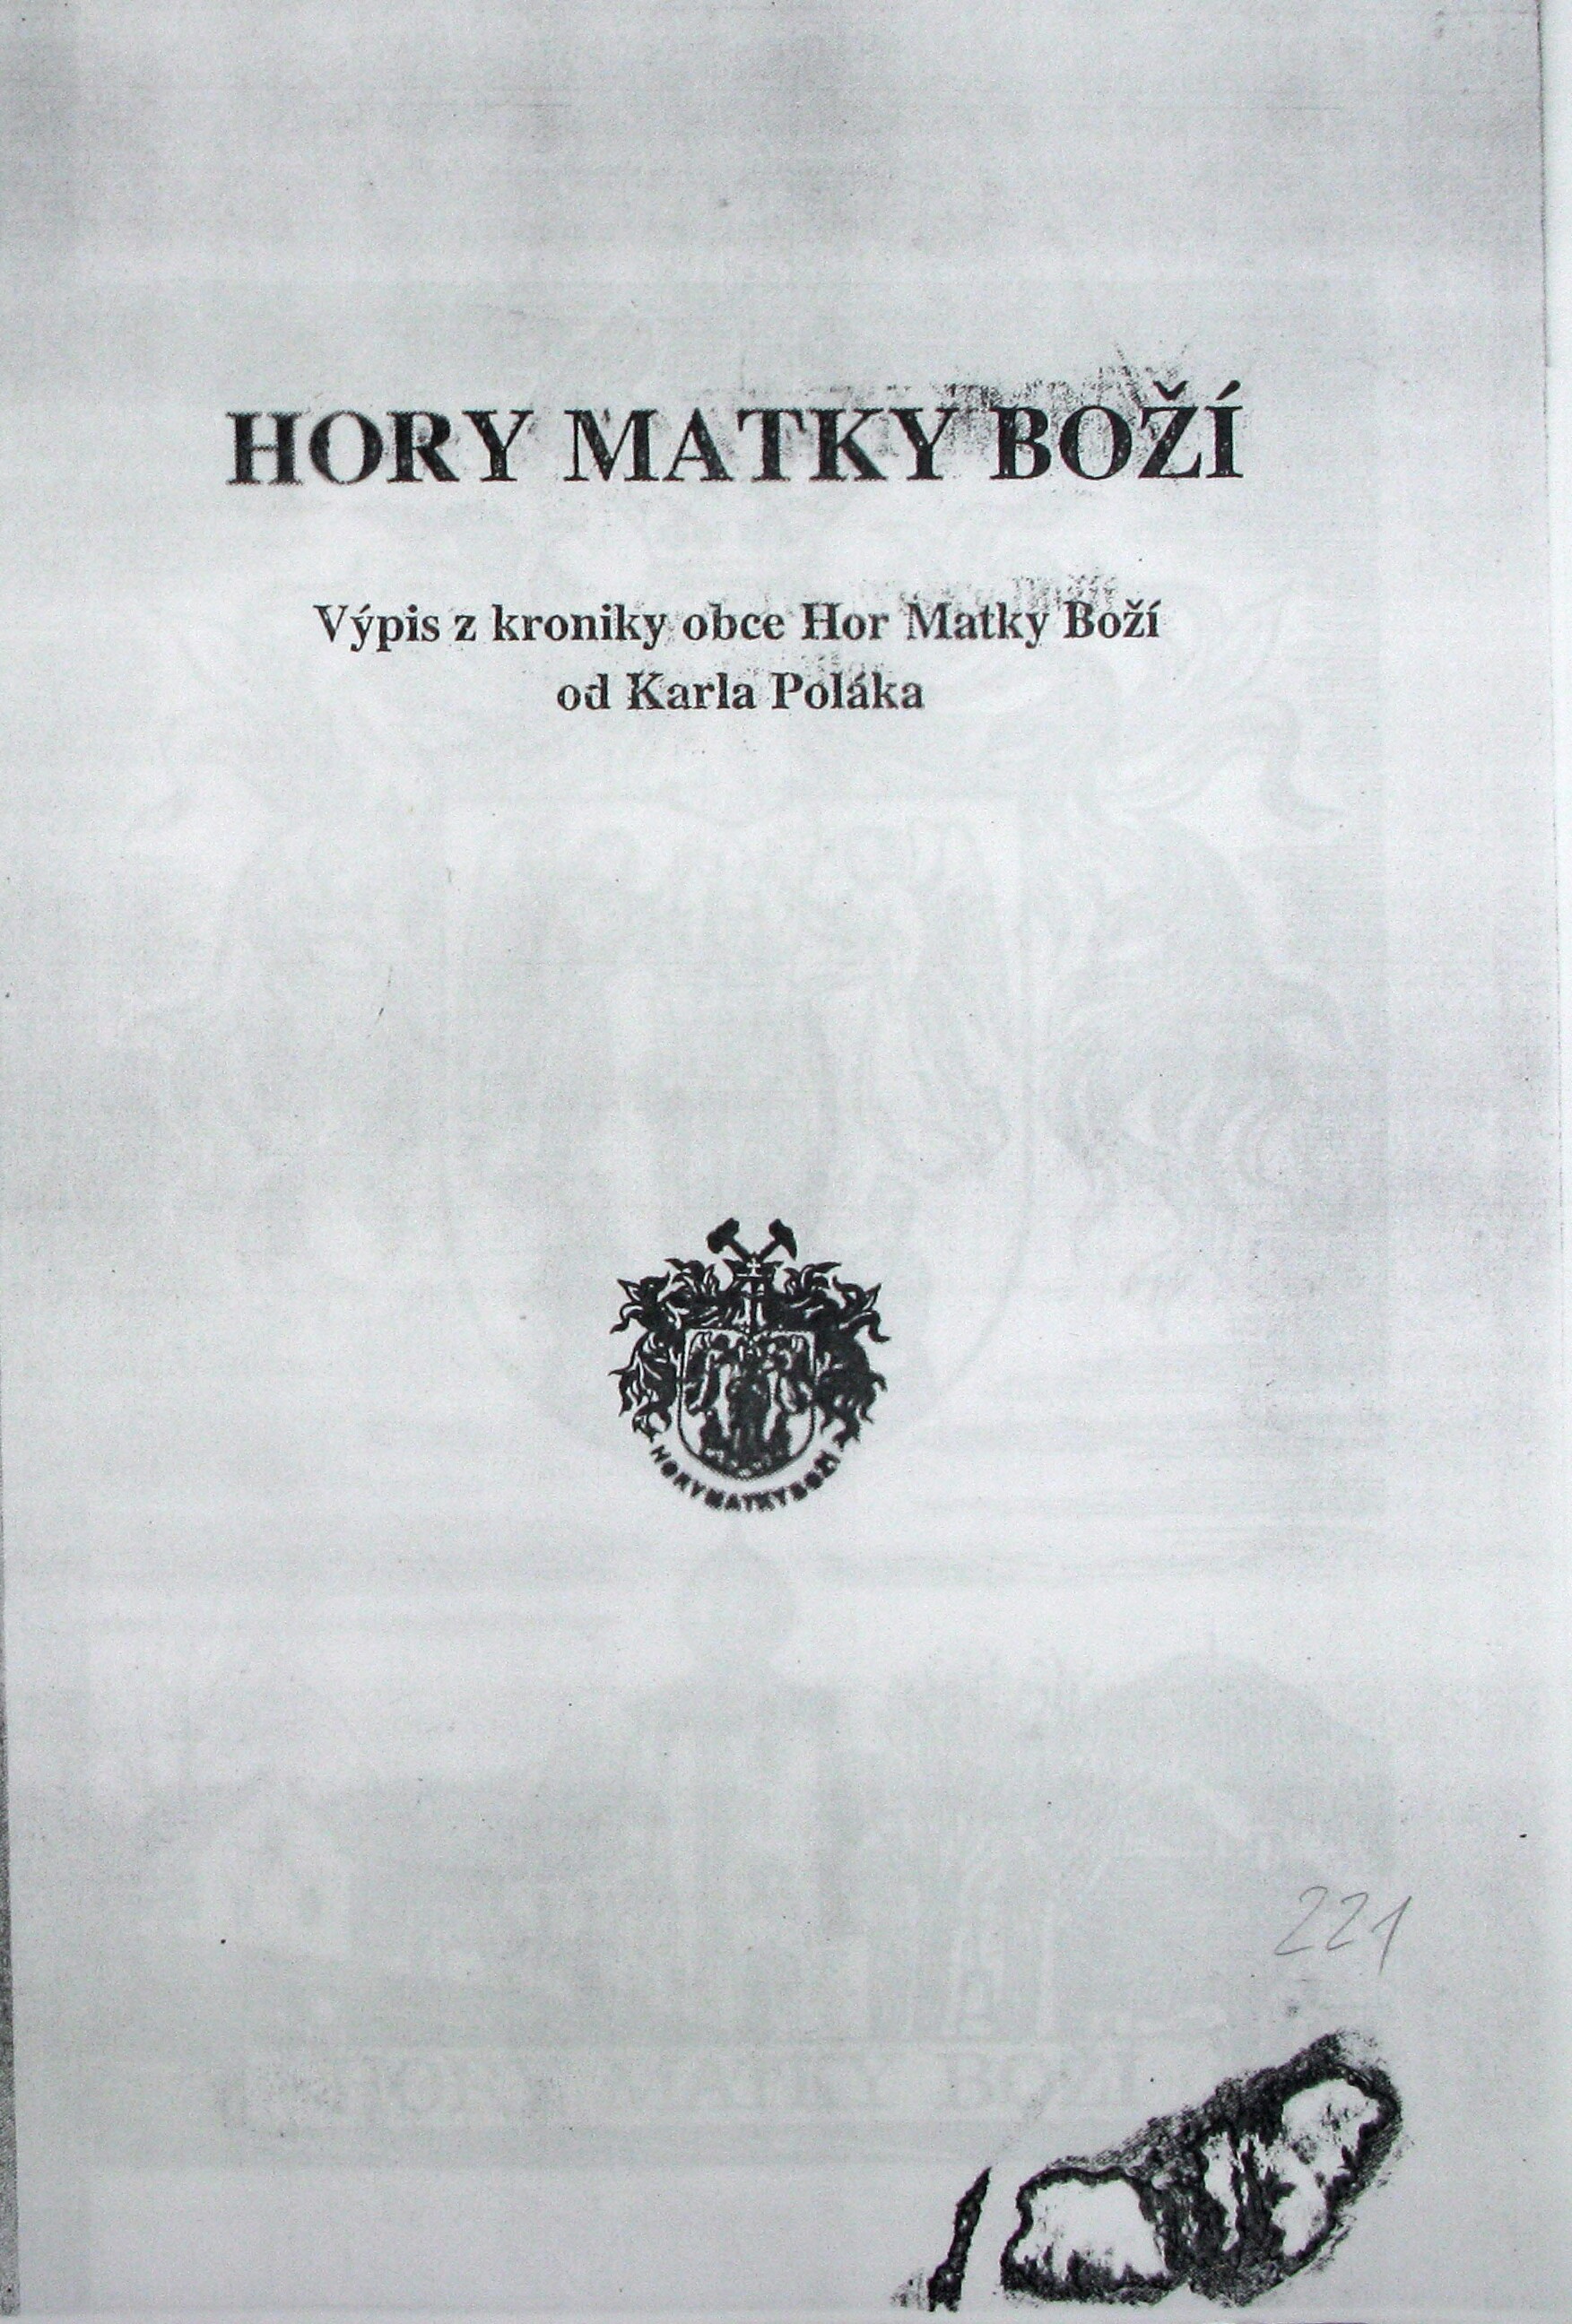 2. soap-kt_01748_obec-hory-matky-bozi-1995_0020